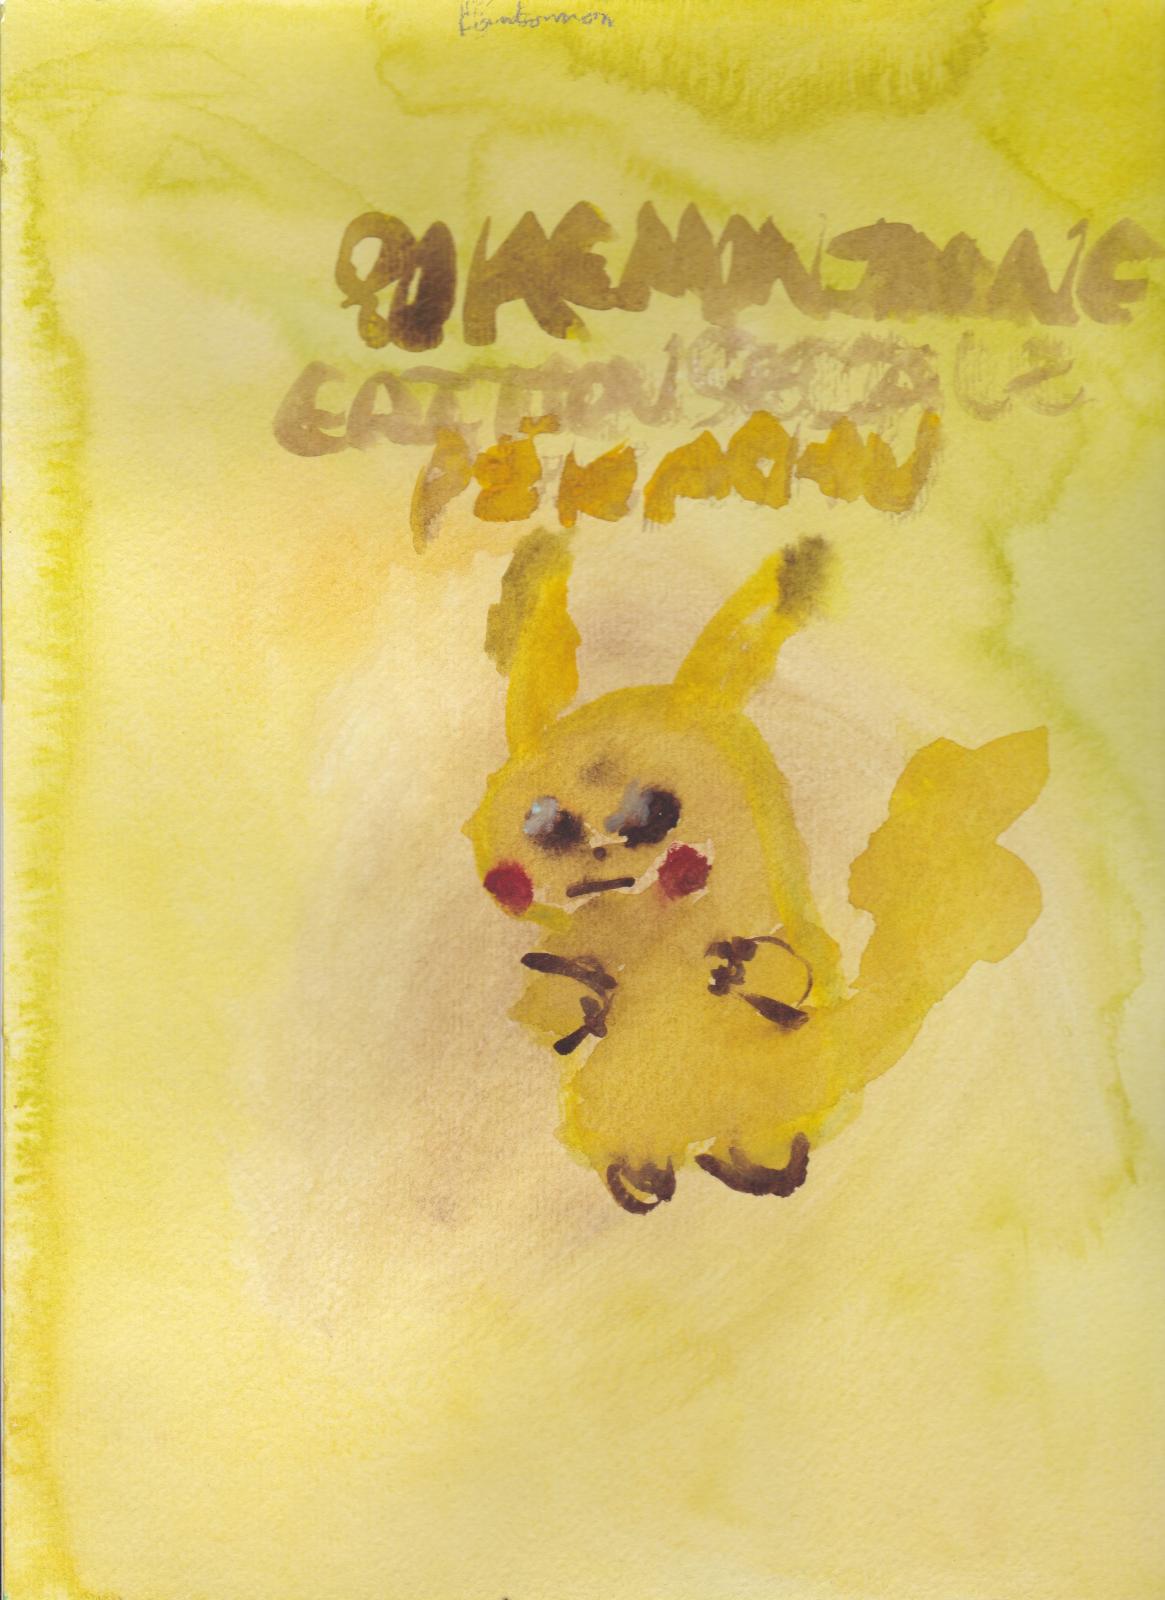 Dgrad de jaune: Pokmon version Jaune dition spciale Pikachu (Moi) Magnifique Pikachu Rafa.